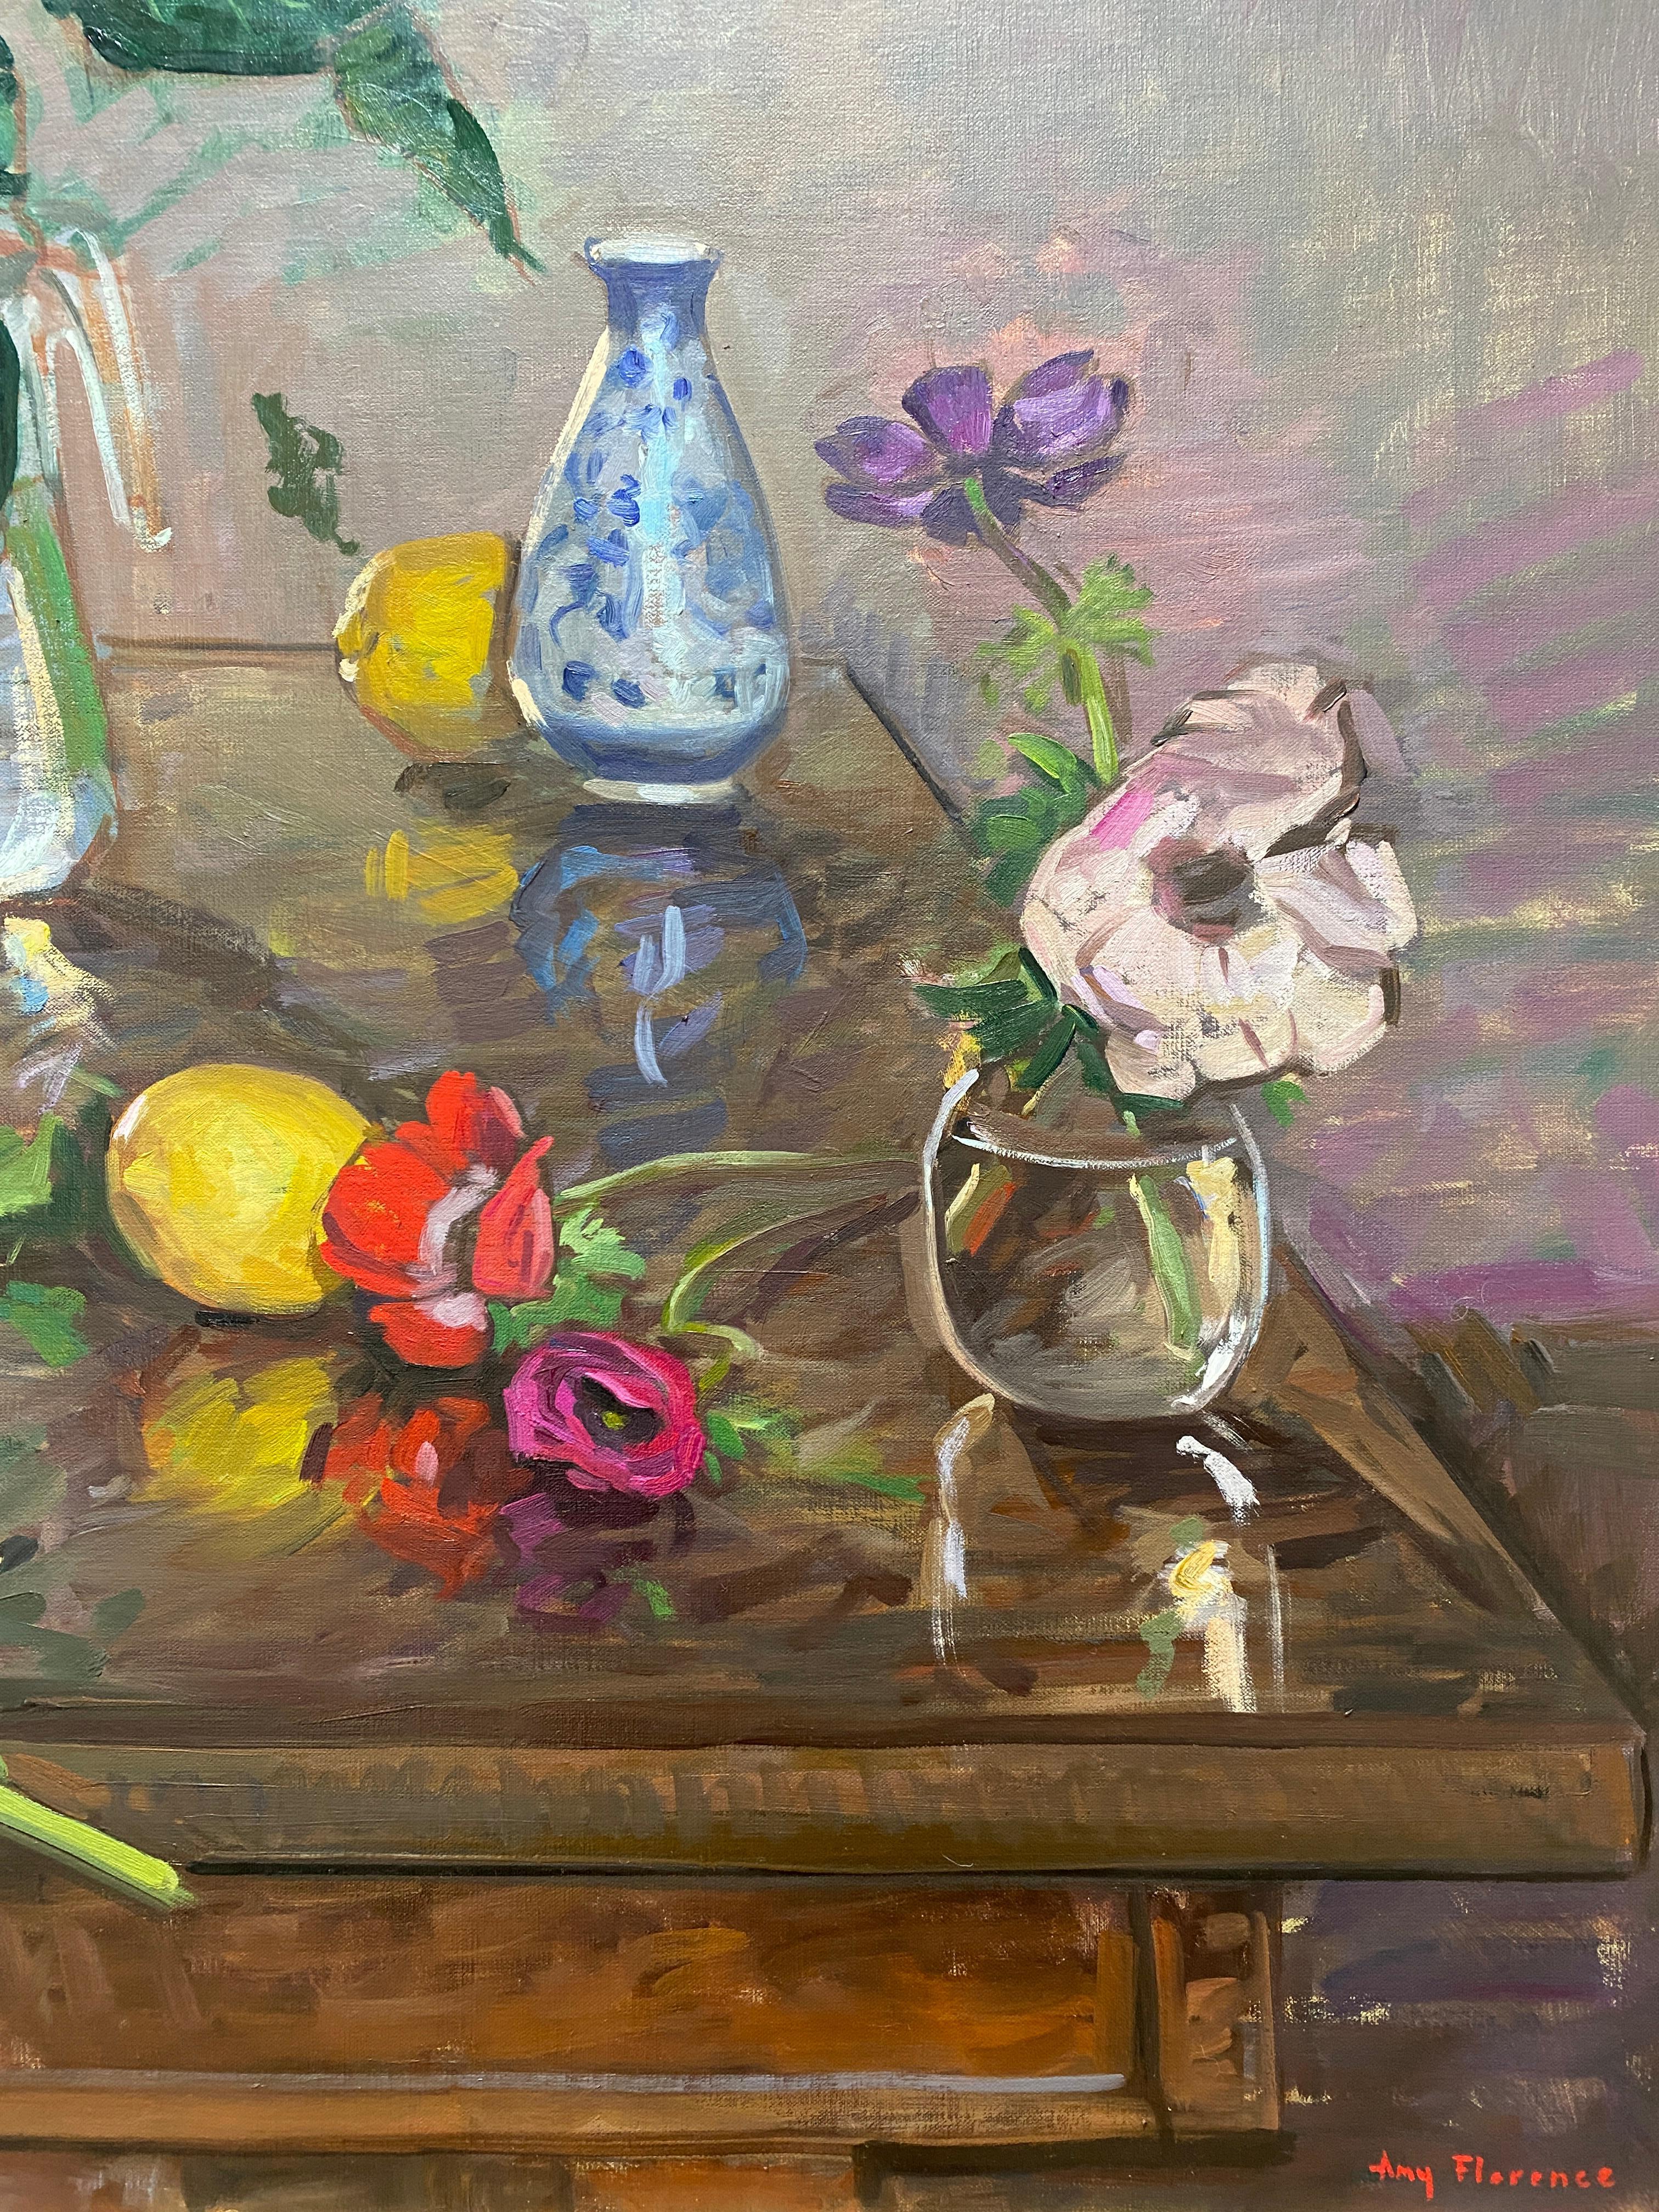 Le tableau ultime d'Amy Florence : une abondance de fleurs fraîchement coupées, de fruits, de vases magnifiques mais rustiques, et la théière bleue. Plus récemment, Florence a créé des natures mortes devant des fenêtres ouvertes. Ici, on voit dans